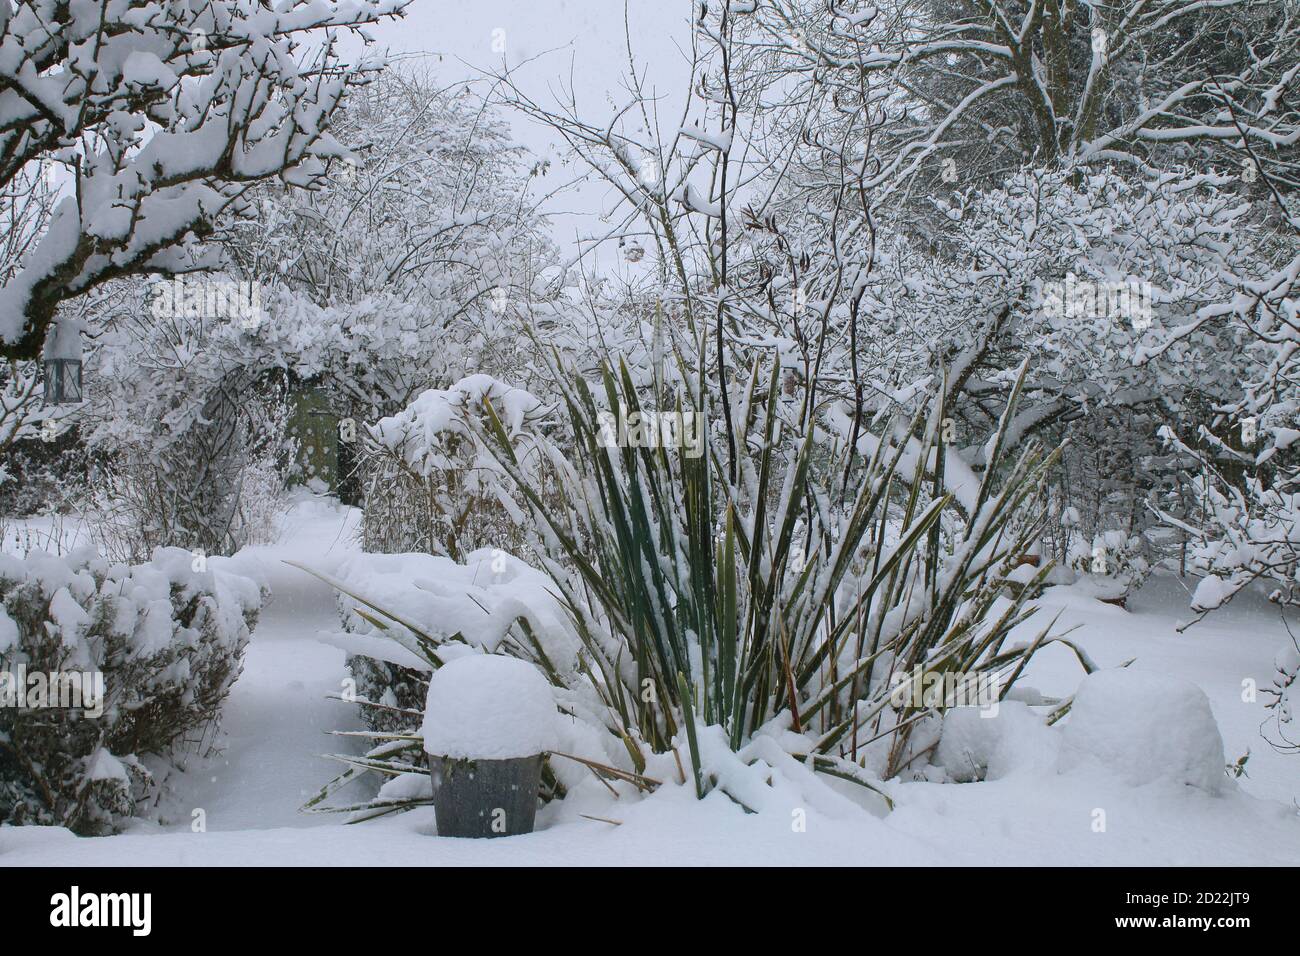 Eine schöne Landschaft Winter Schnee Szene von einem englischen Bio Landgarten gefrorenen eisigen Wetter weiße Schicht Abdeckung auf Birne Espalier Baumweg Rasen stieg Stockfoto